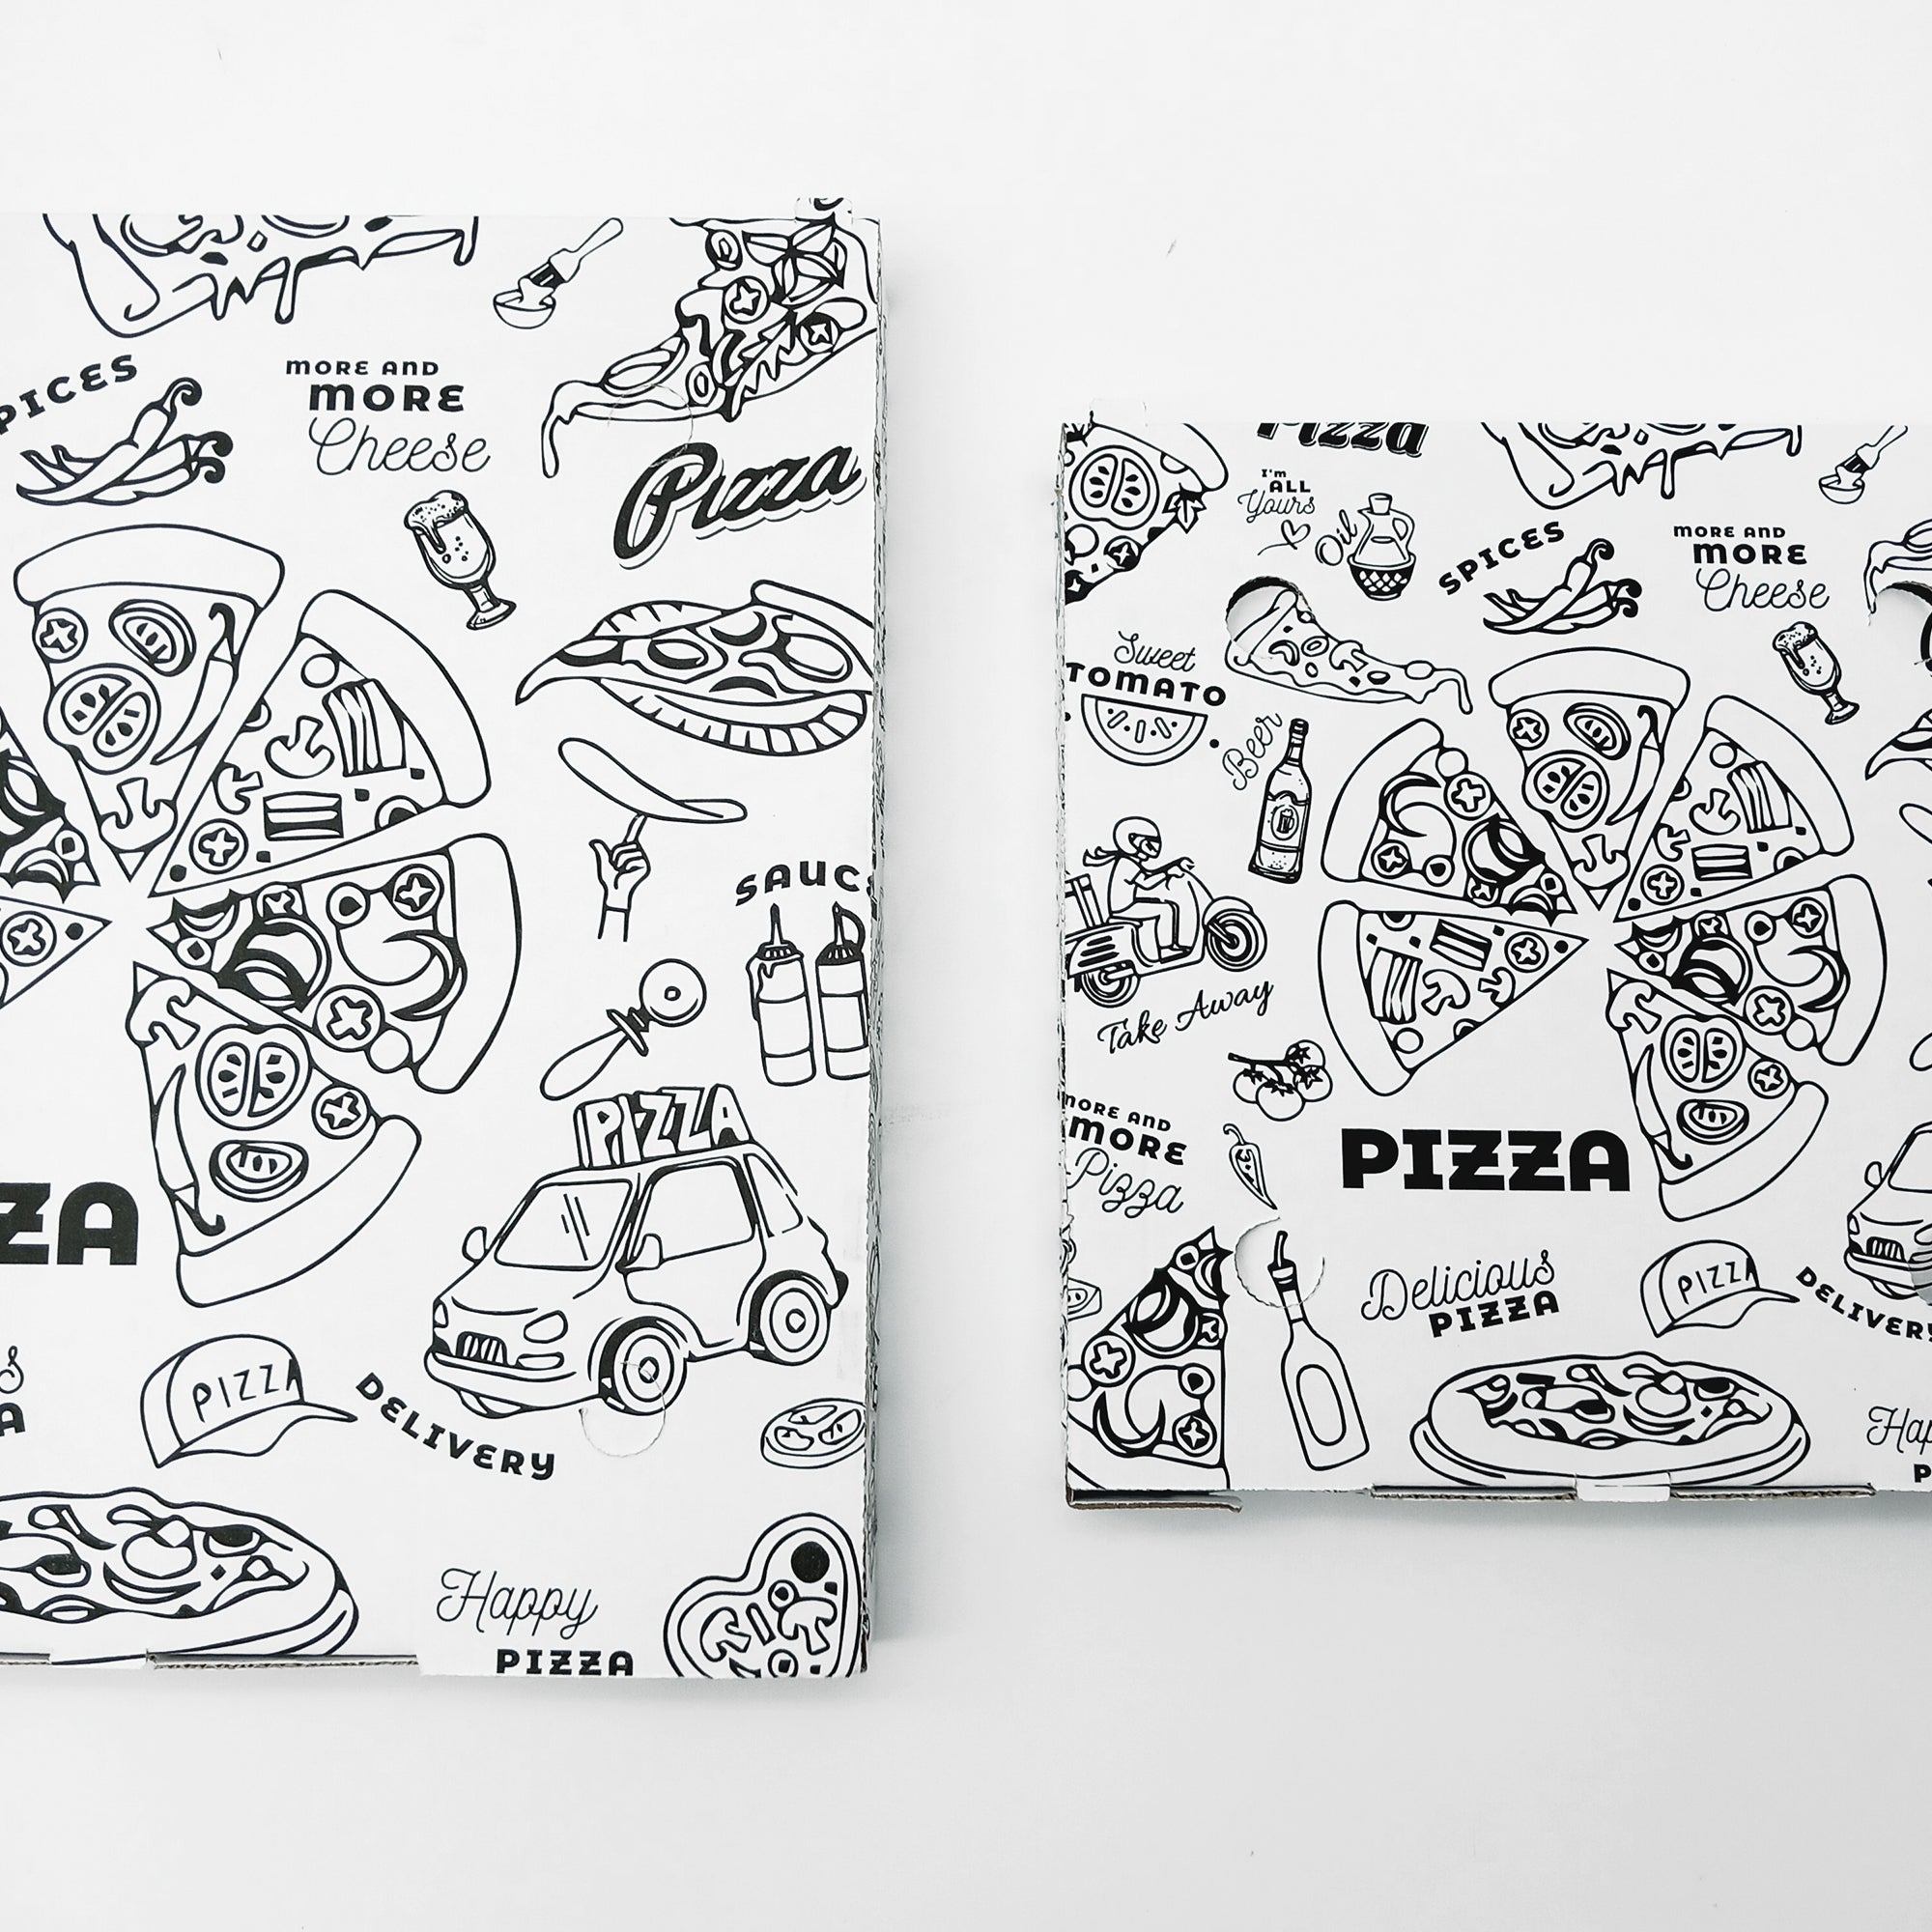 100 pz Scatole pizza linea completa € 0,2 Cad + Iva